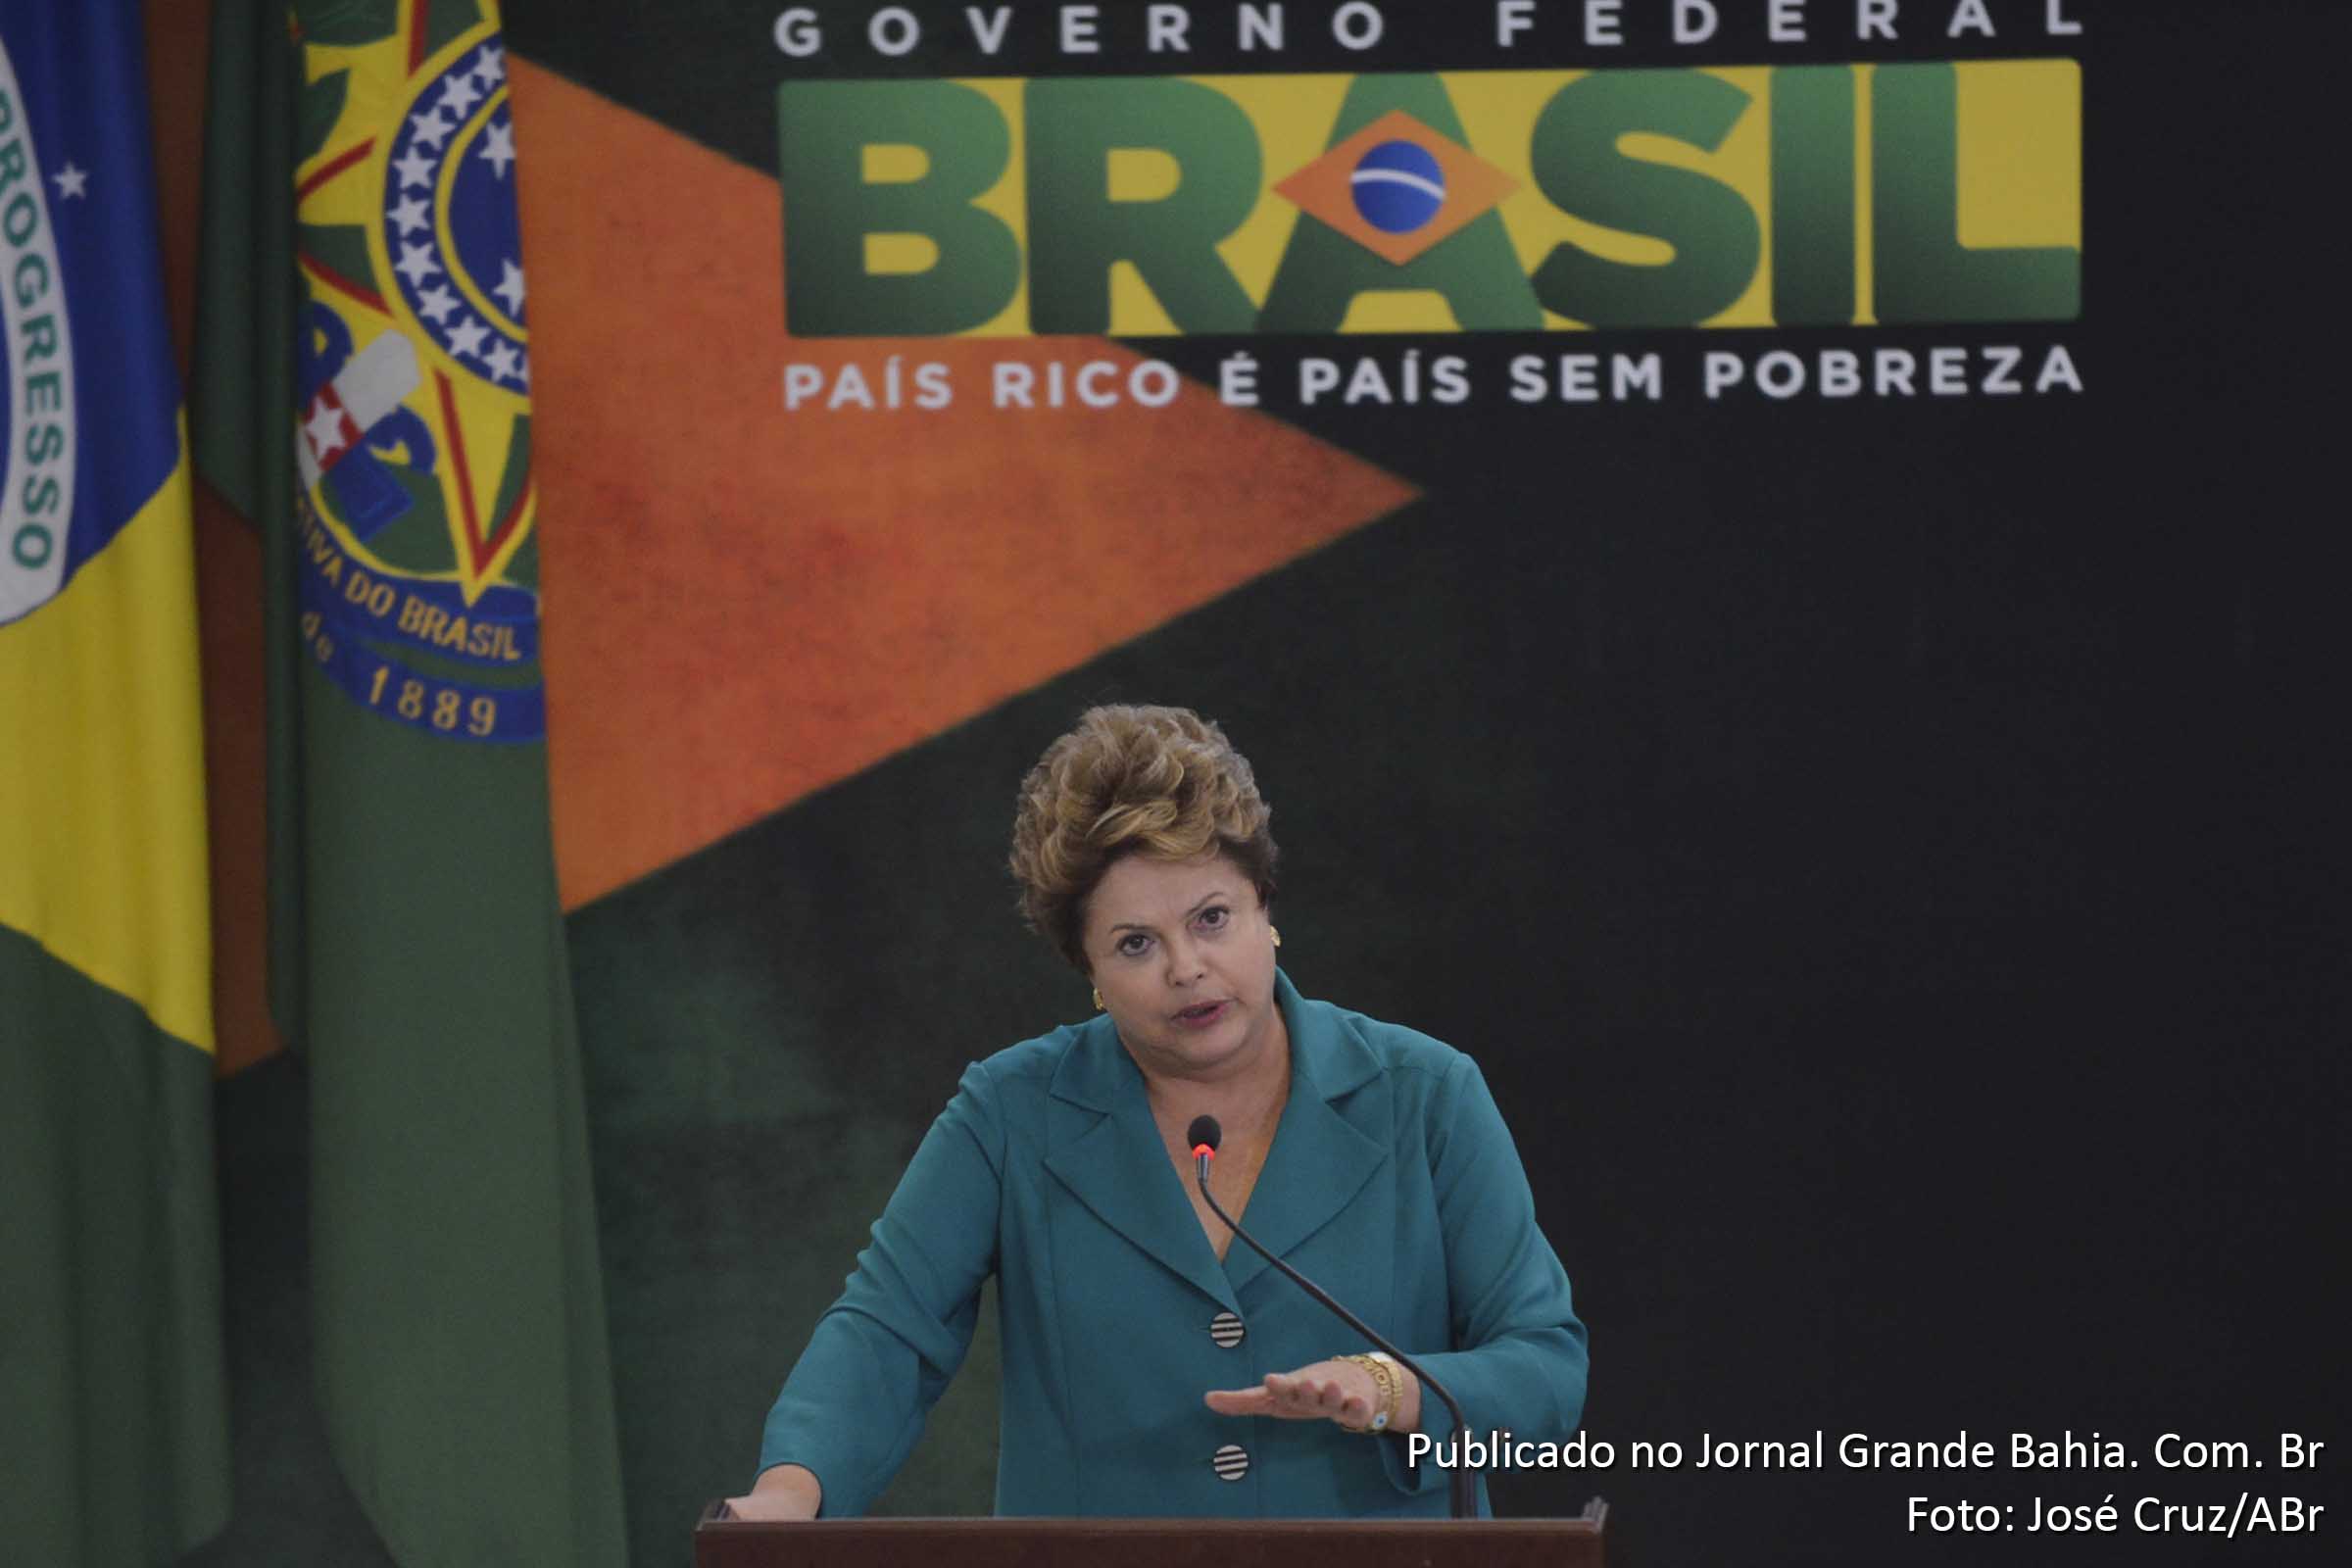 Dilma Rousseff: “Por isso, o governo brasileiro está empenhado em obter esclarecimentos do governo norte-americano sobre todas as violações eventualmente praticadas".